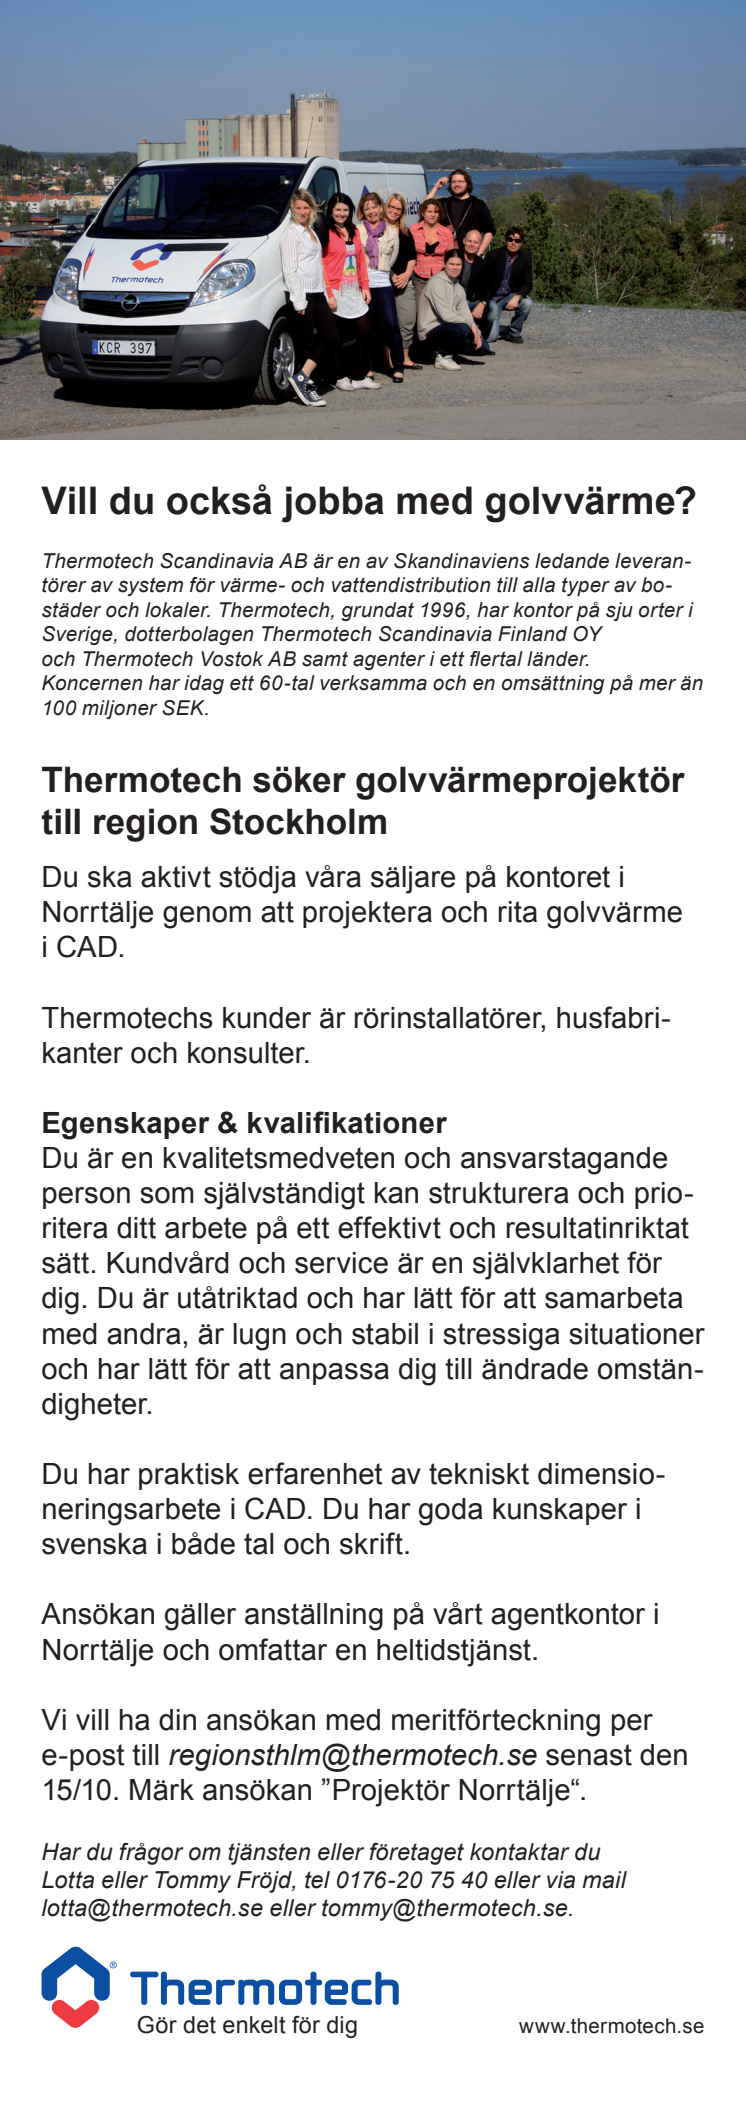 Thermotech söker golvvärmeprojektör till region Stockholm